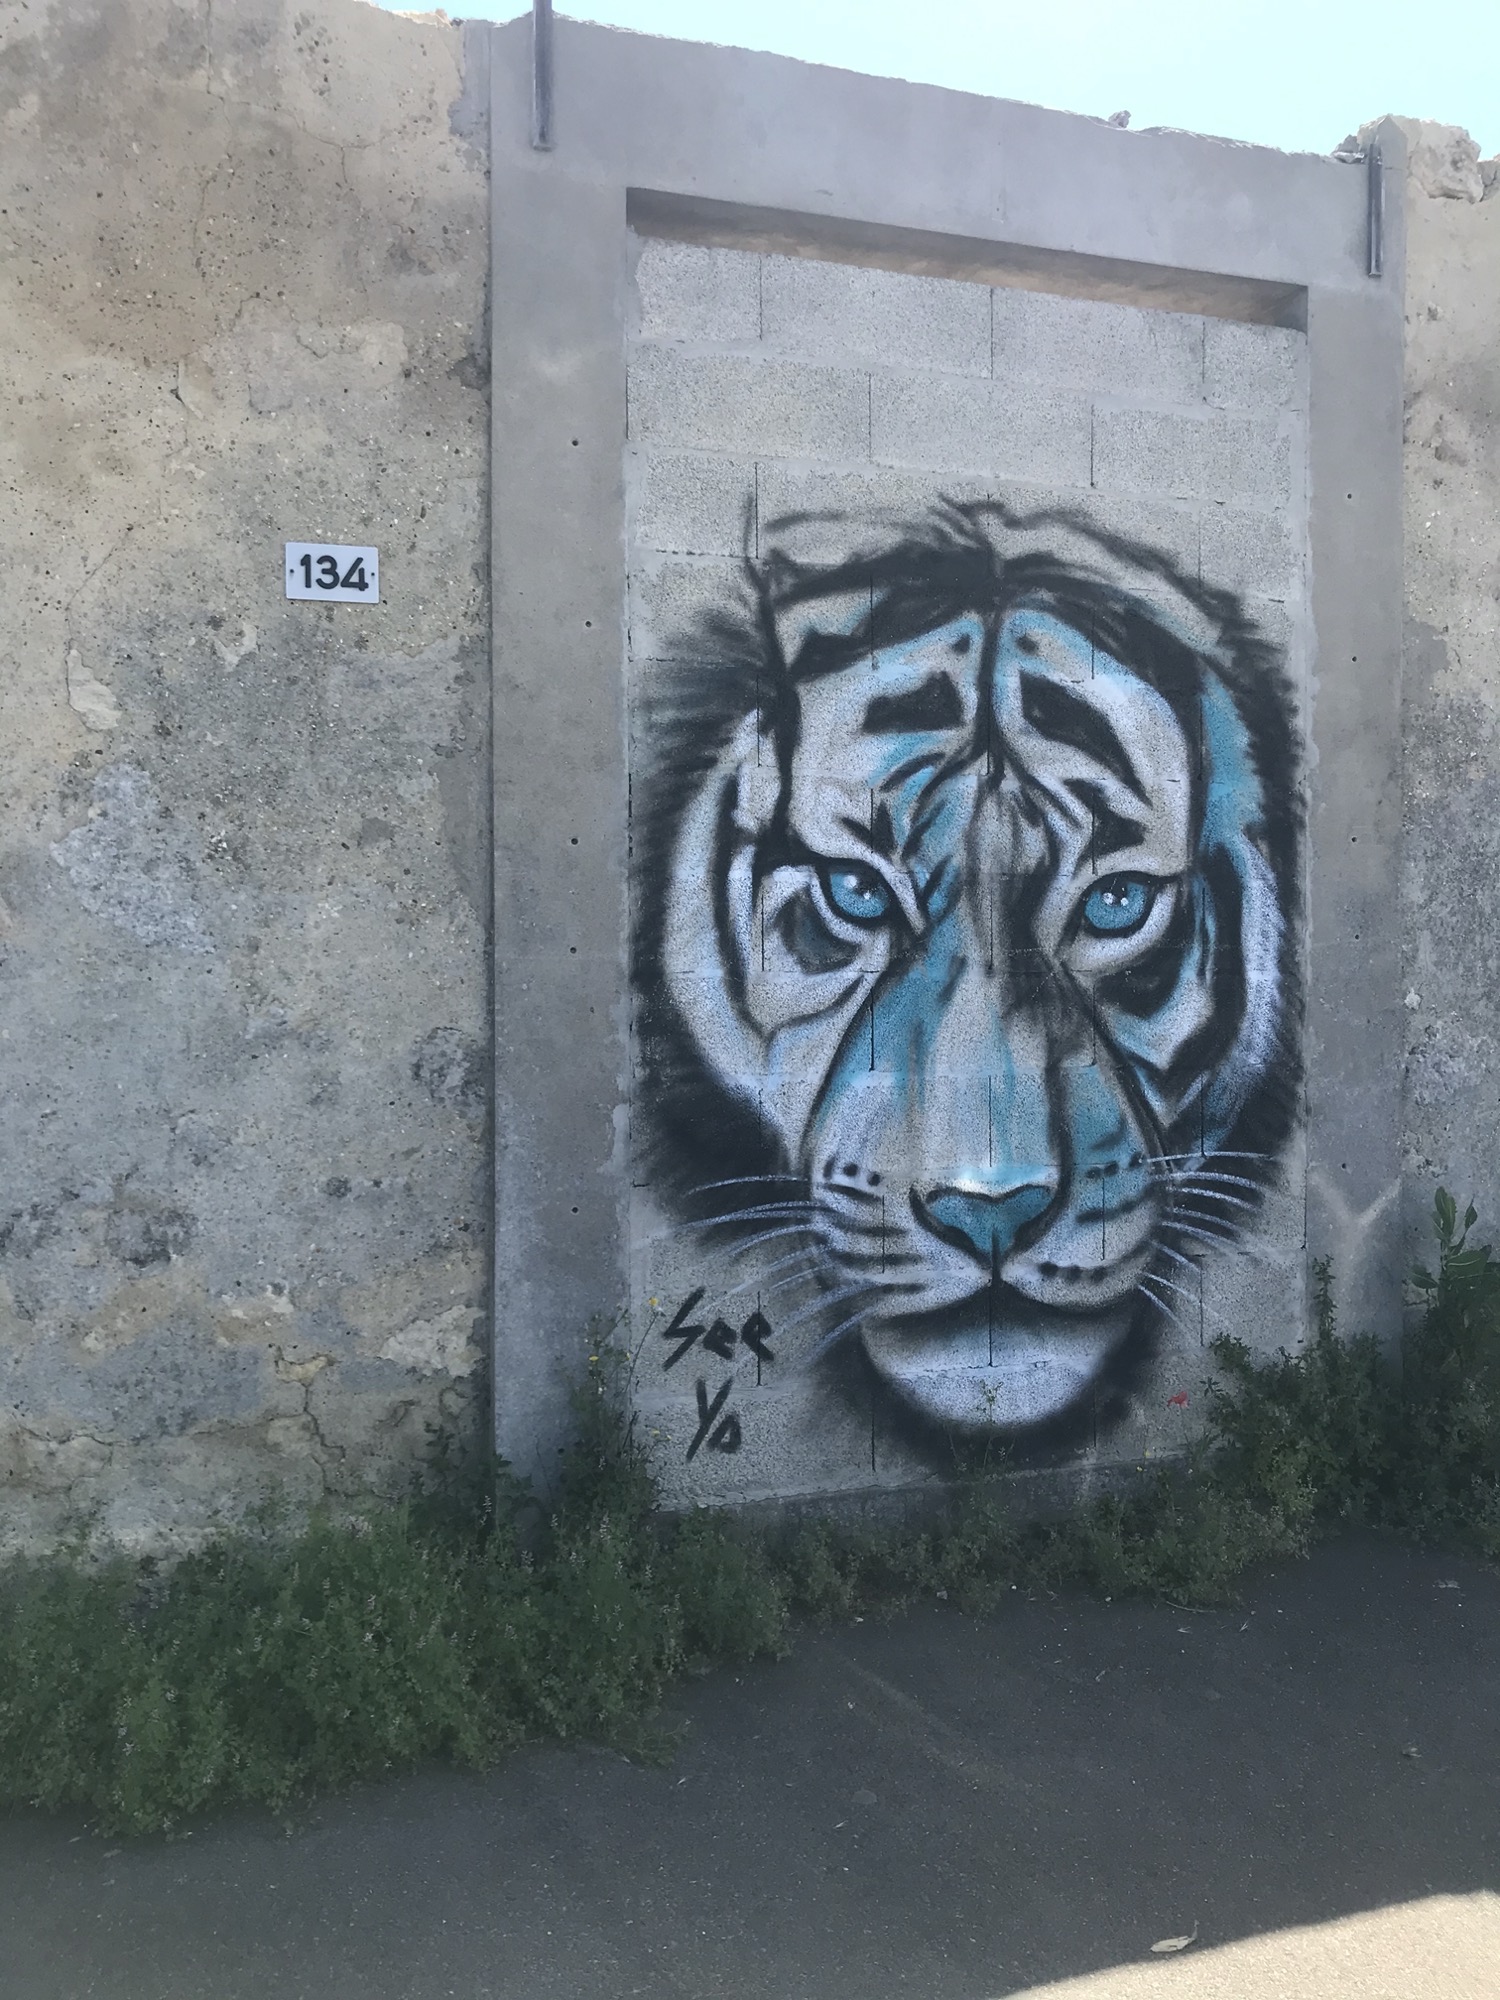 Graffiti 4120 Le tigre de see ya captured by Julauder in Bruges France